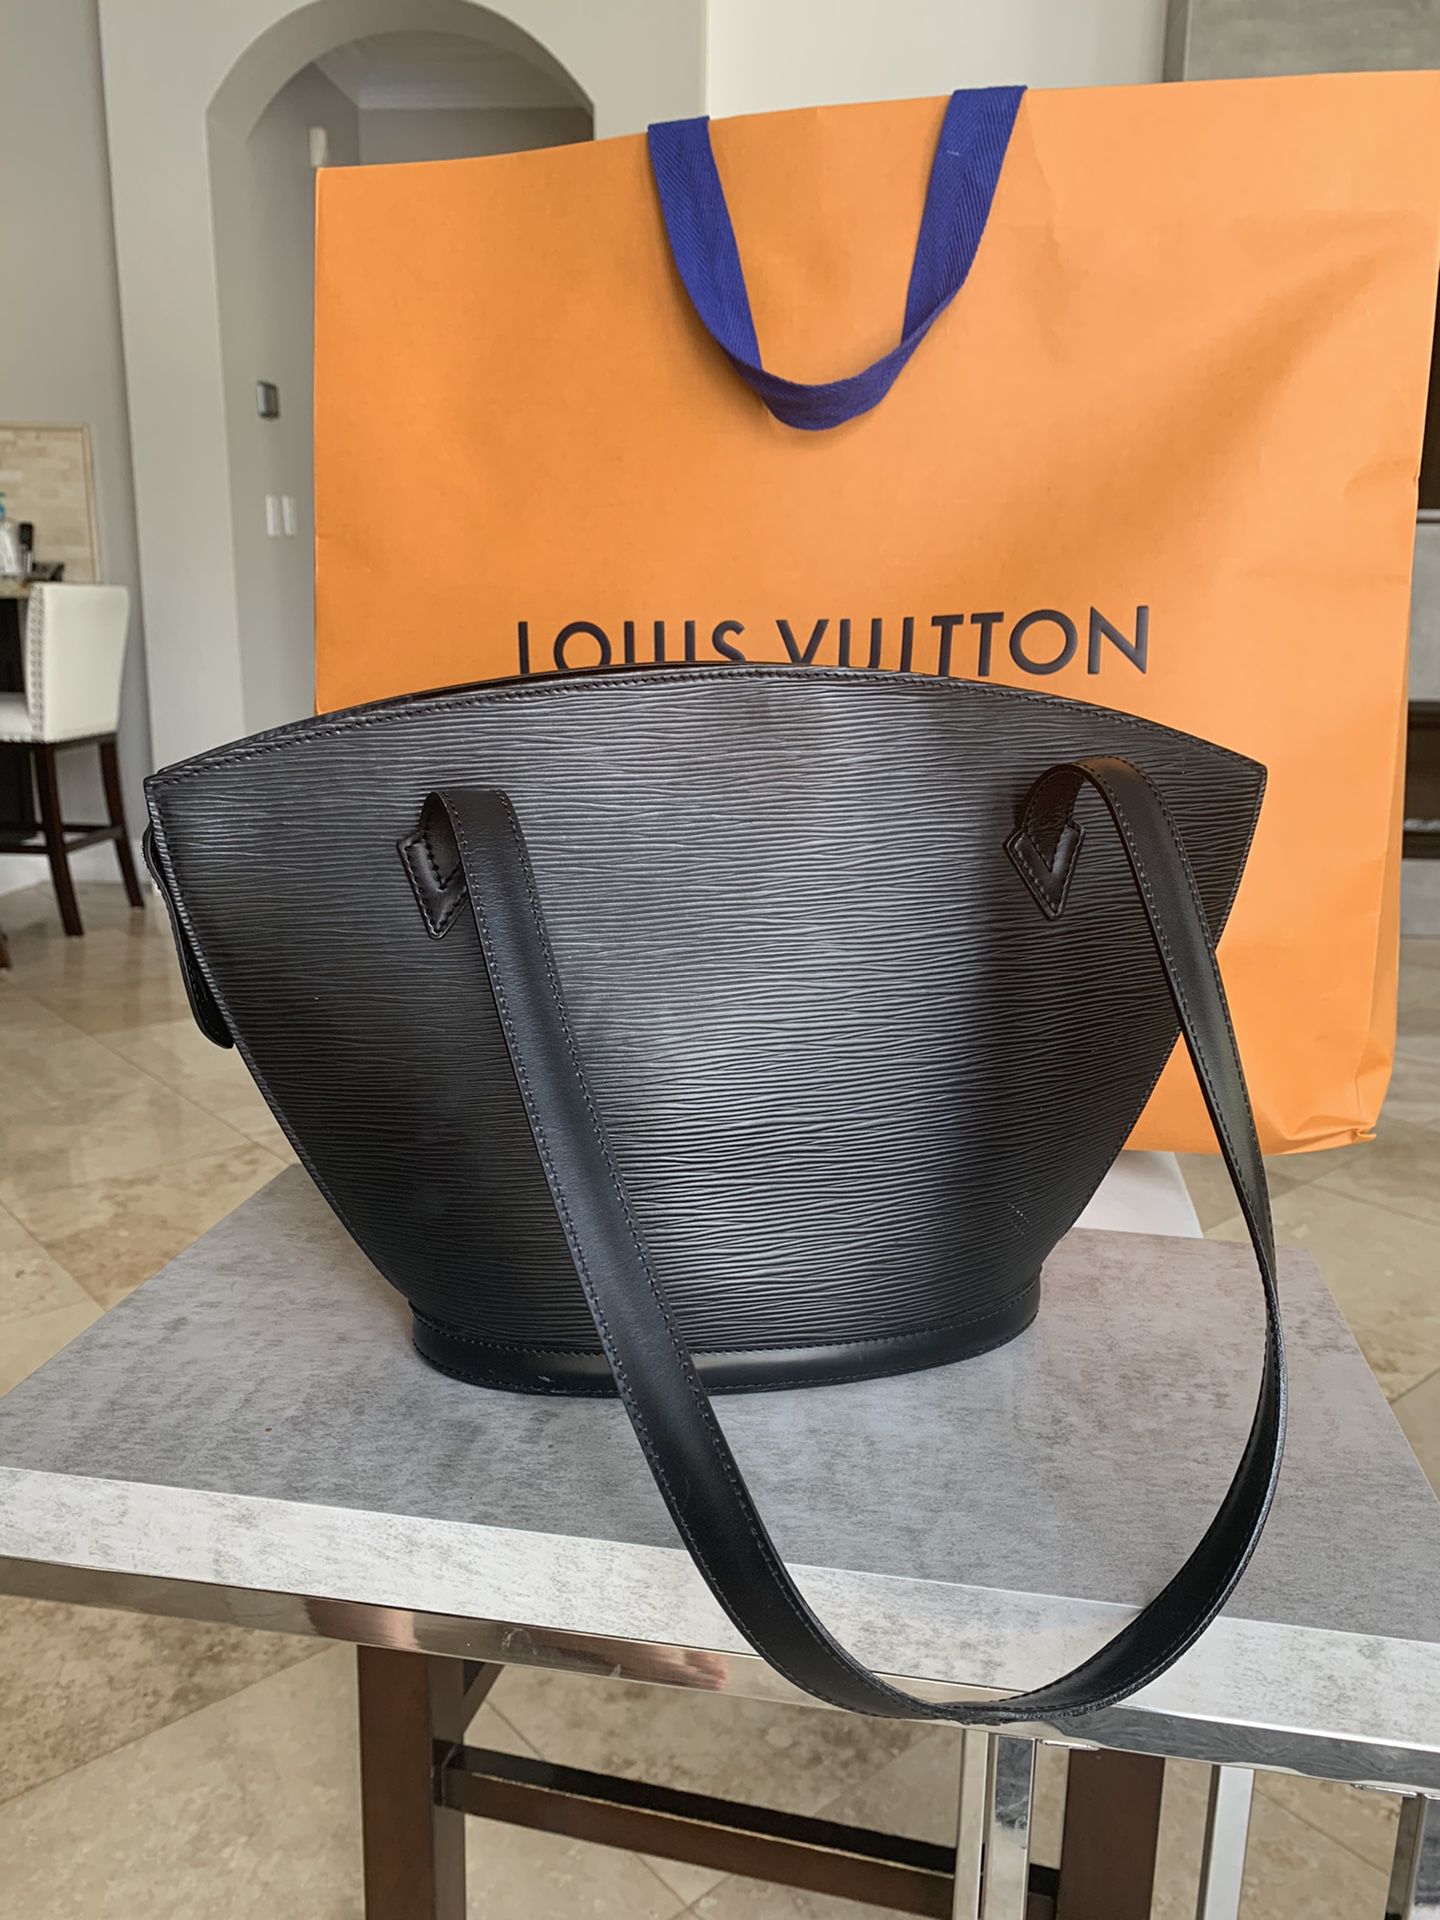 LOUIS VUITTON Black Leather Saint Jacque bag for Sale in